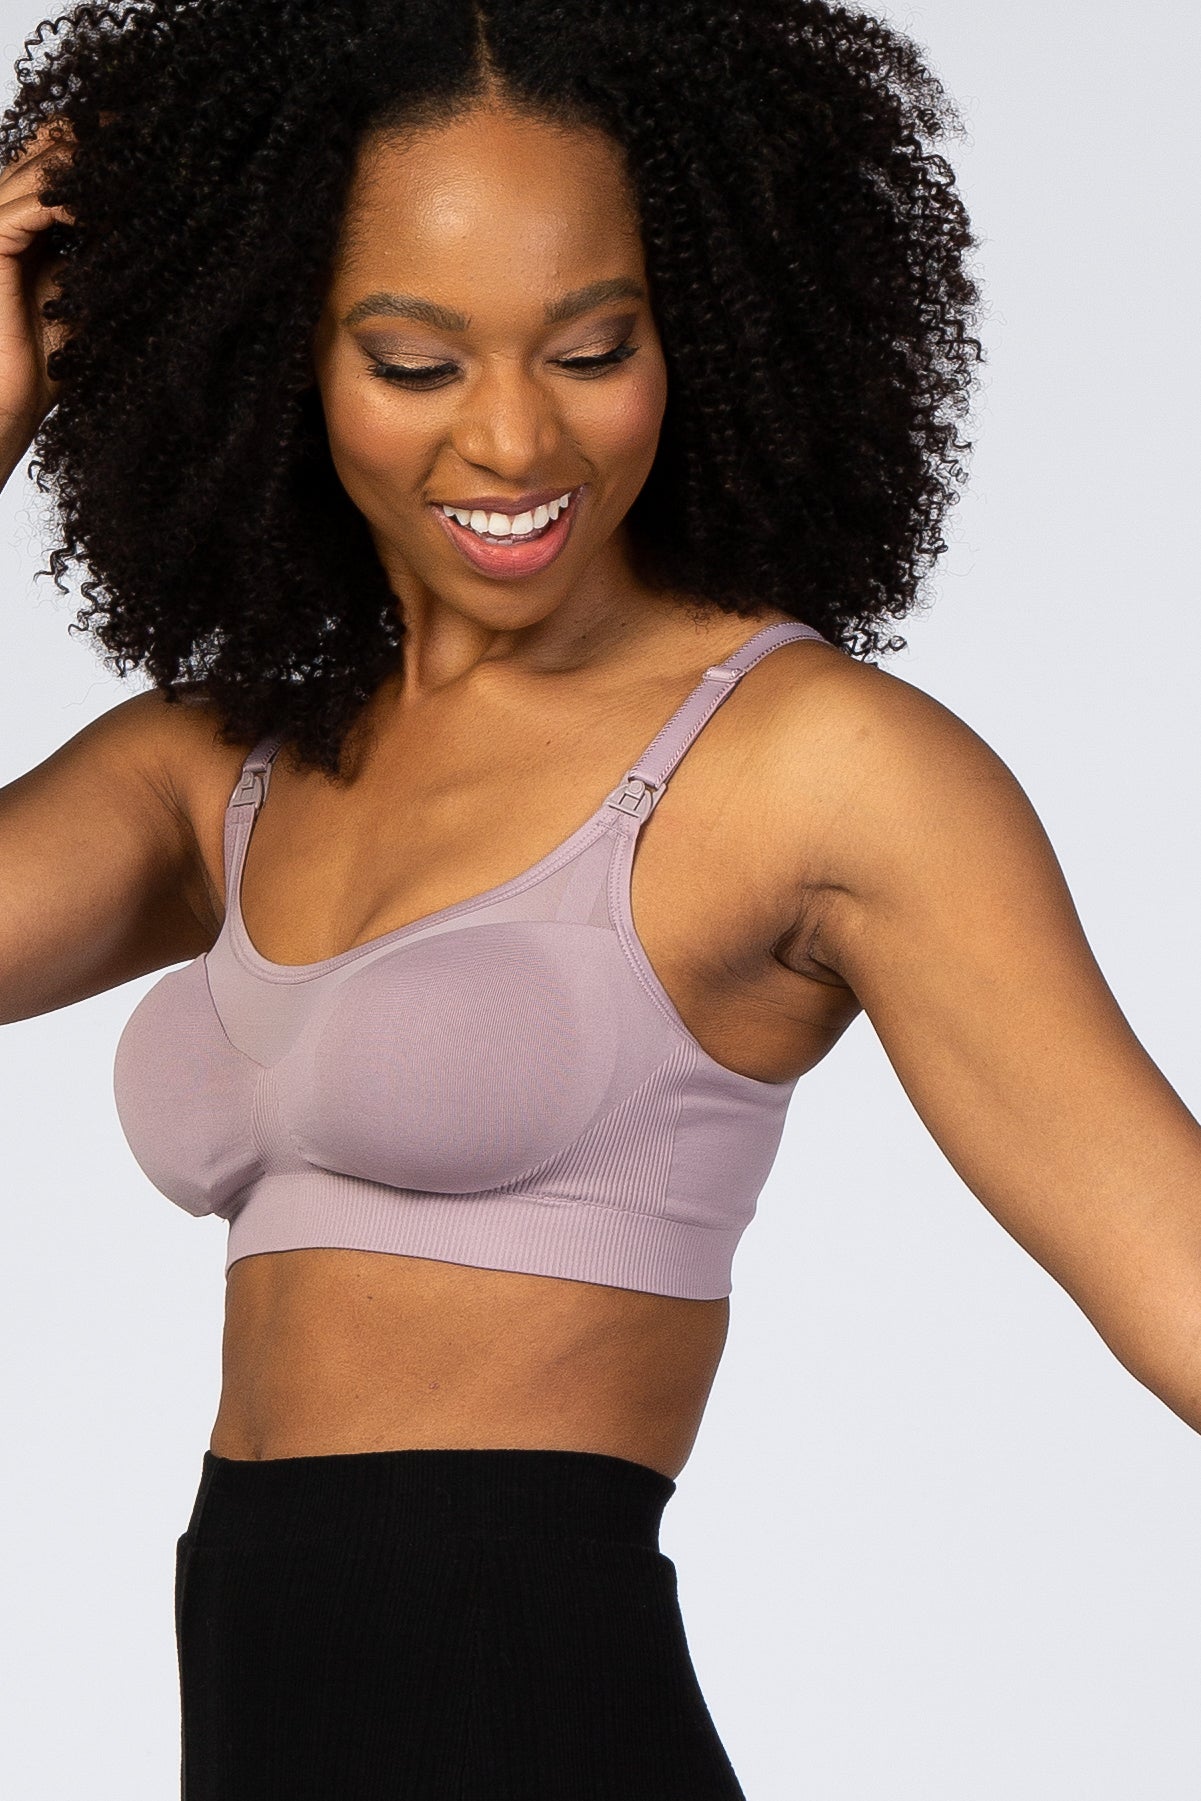 Mauve Bravado Designs Body Silk Seamless Sheer Nursing Bra– PinkBlush